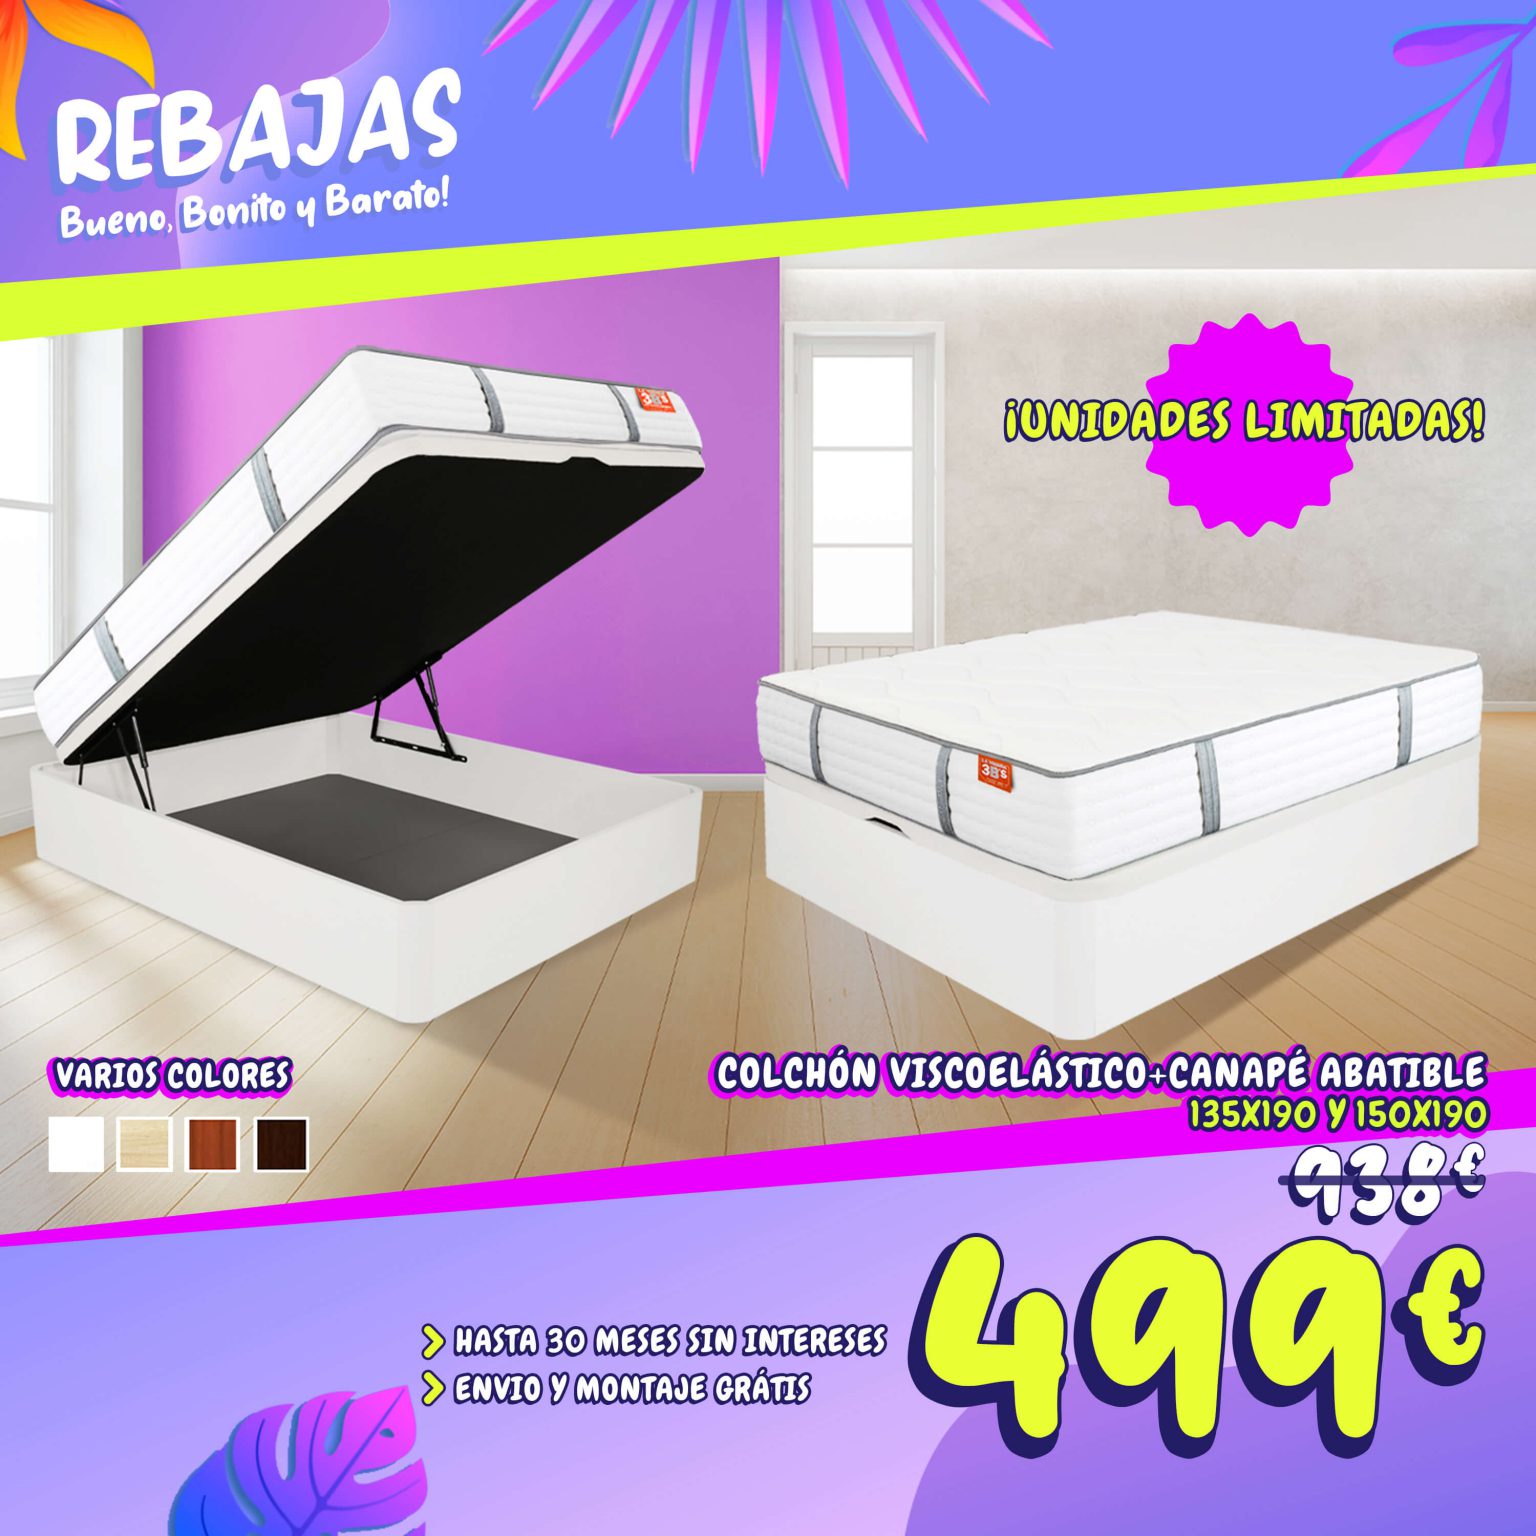 RebajasdeVerano Promo banner pack palma web | La Tienda 3Bs | La Tienda 3Bs